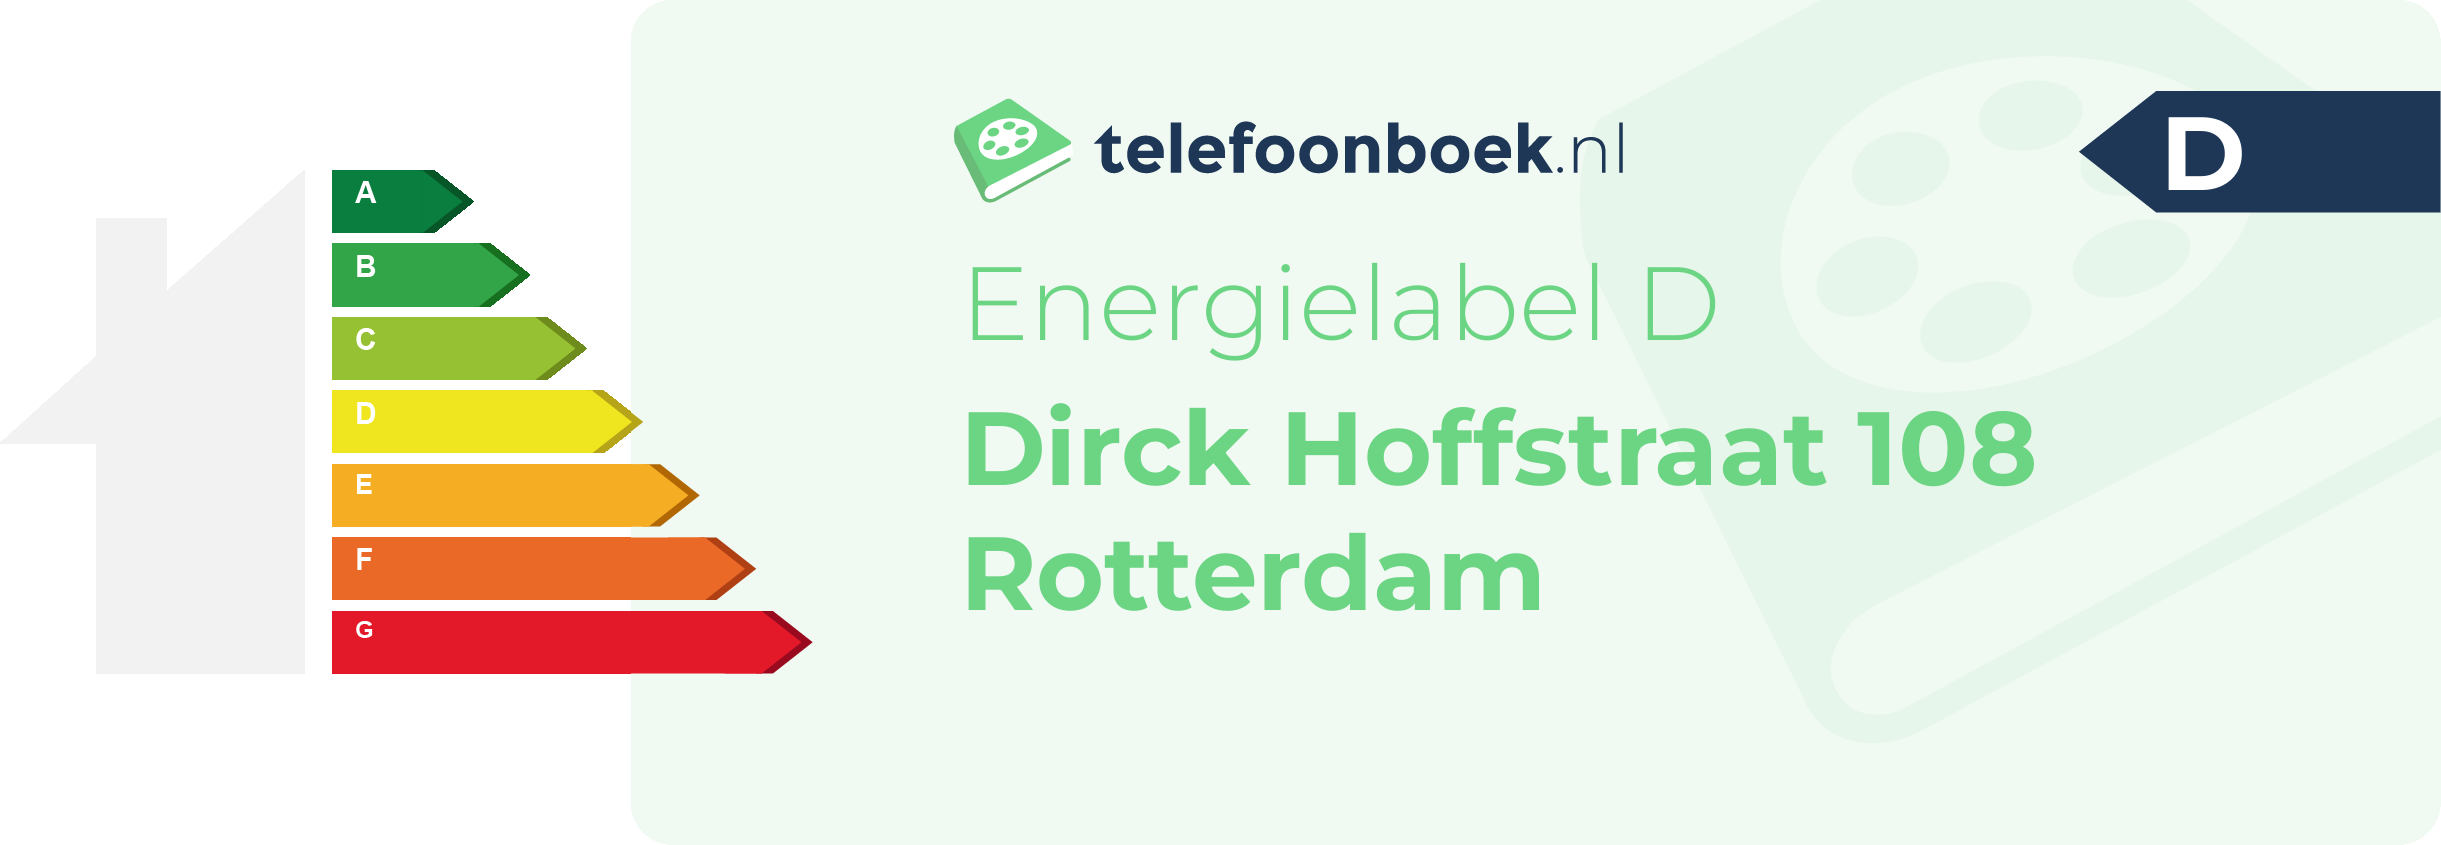 Energielabel Dirck Hoffstraat 108 Rotterdam